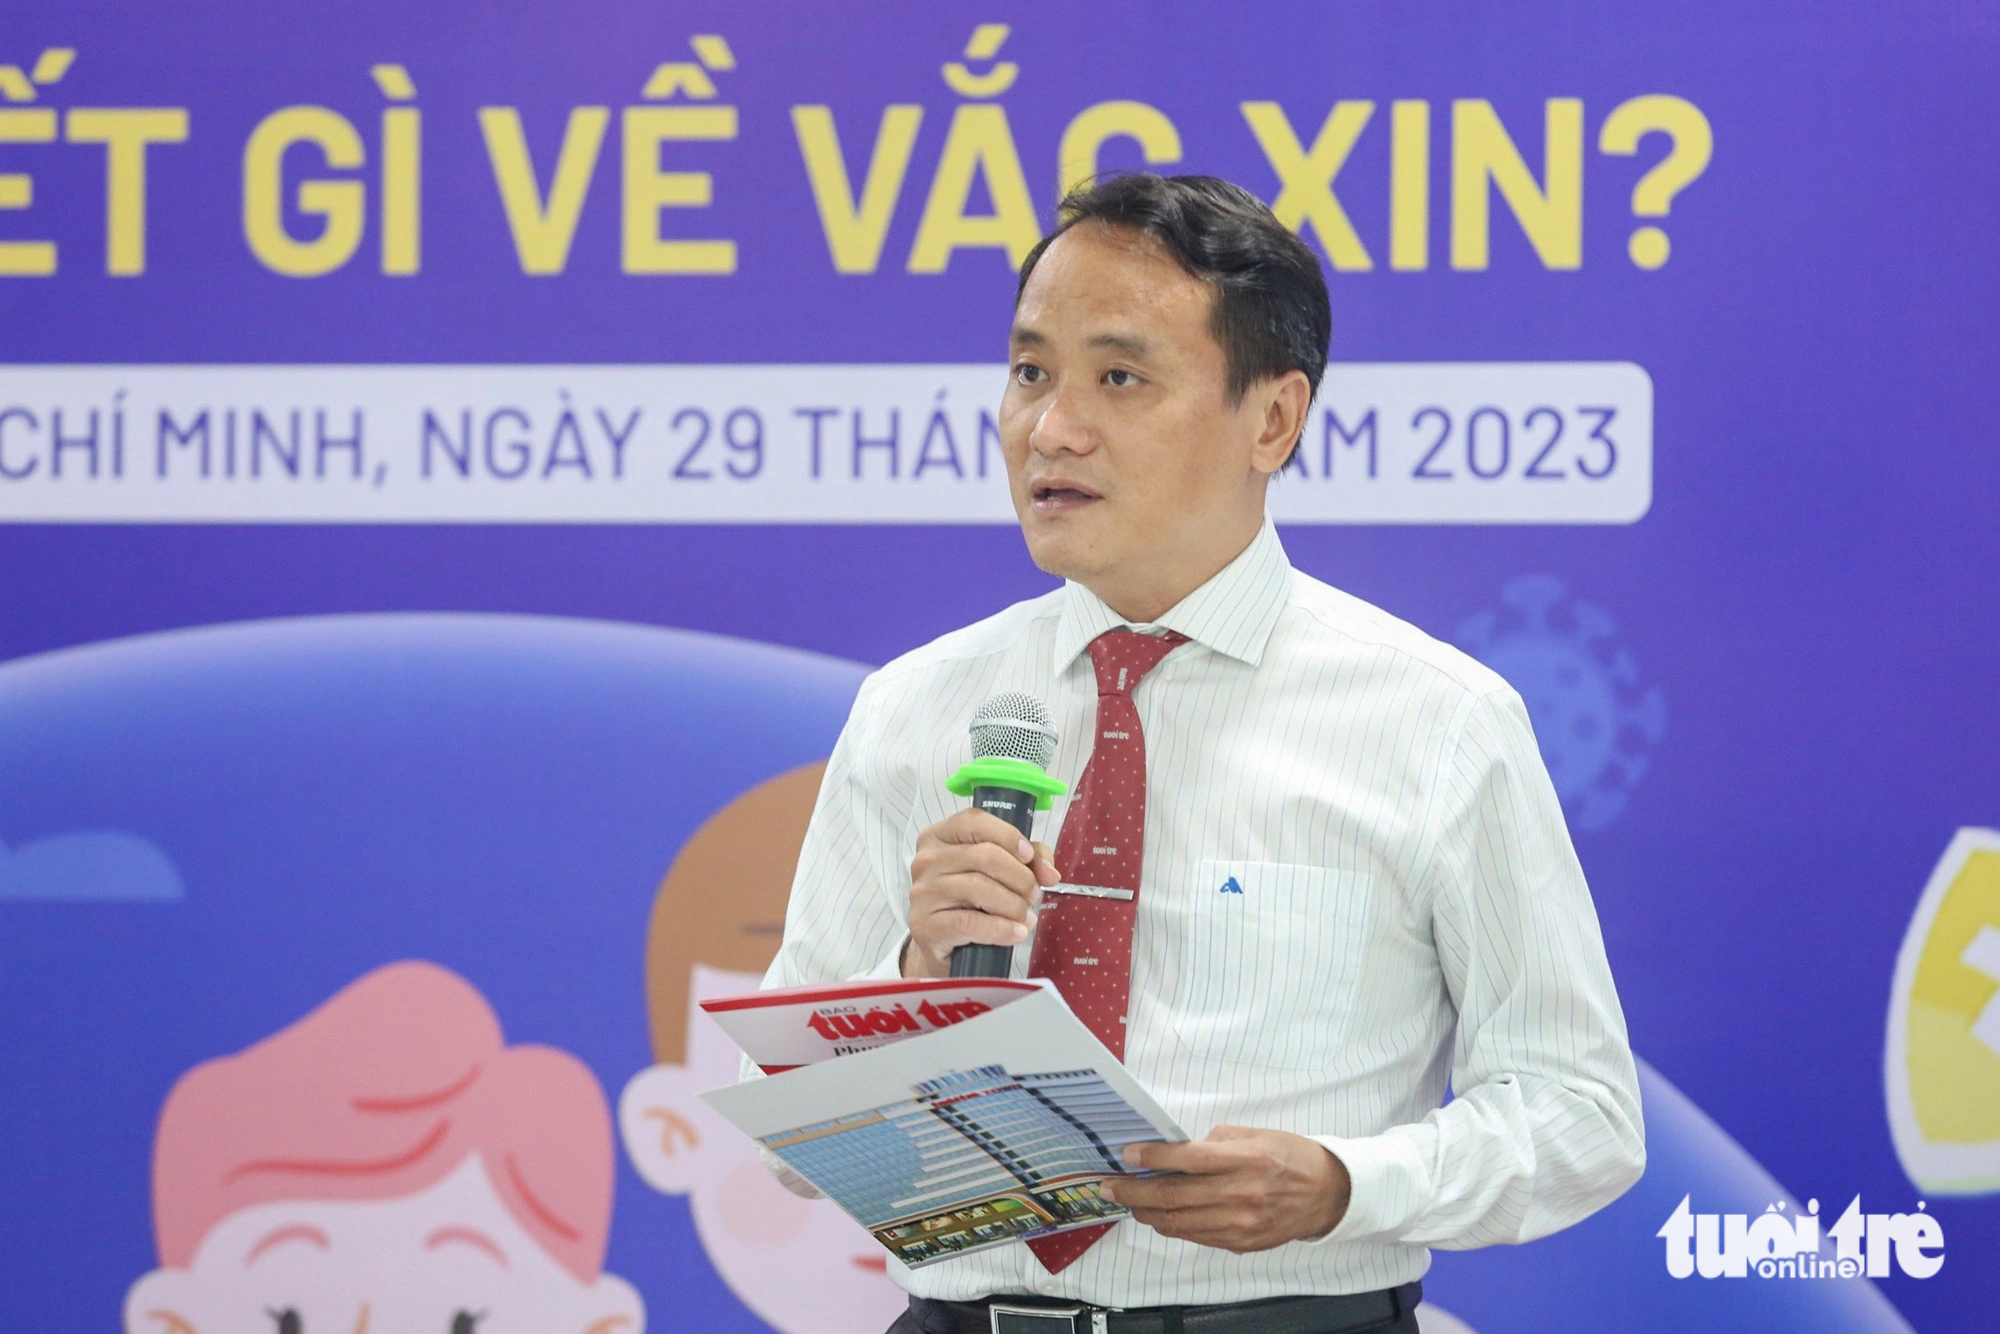 Nhà báo Nguyễn Hoàng Nguyên, Phó tổng biên tập báo Tuổi Trẻ phát biểu mở đầu buổi tọa đàm - Ảnh: PHƯƠNG QUYÊN